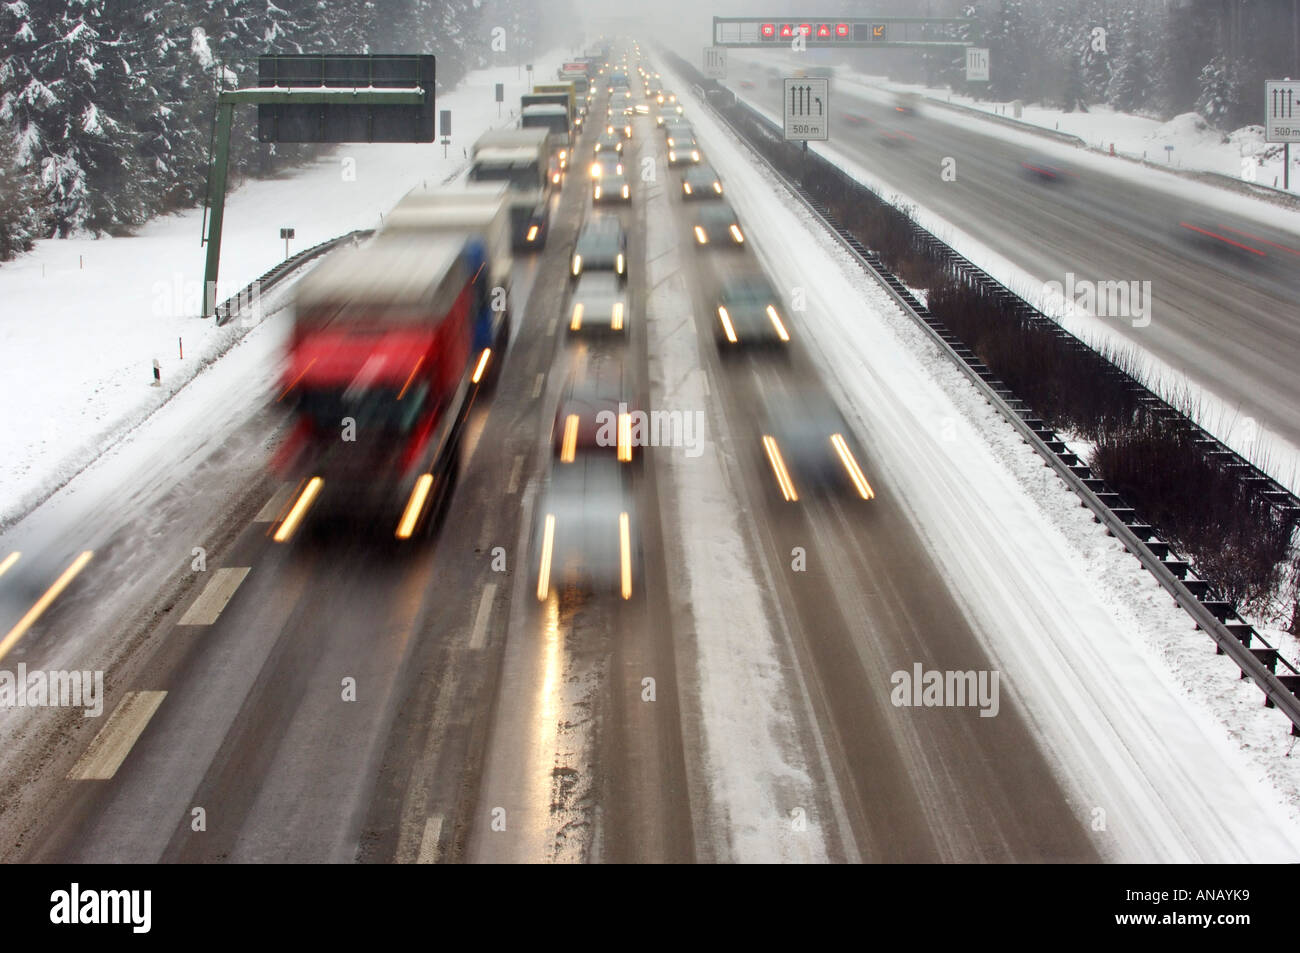 Autoroute à l'hiver de la route, embouteillage sur l'autoroute Banque D'Images